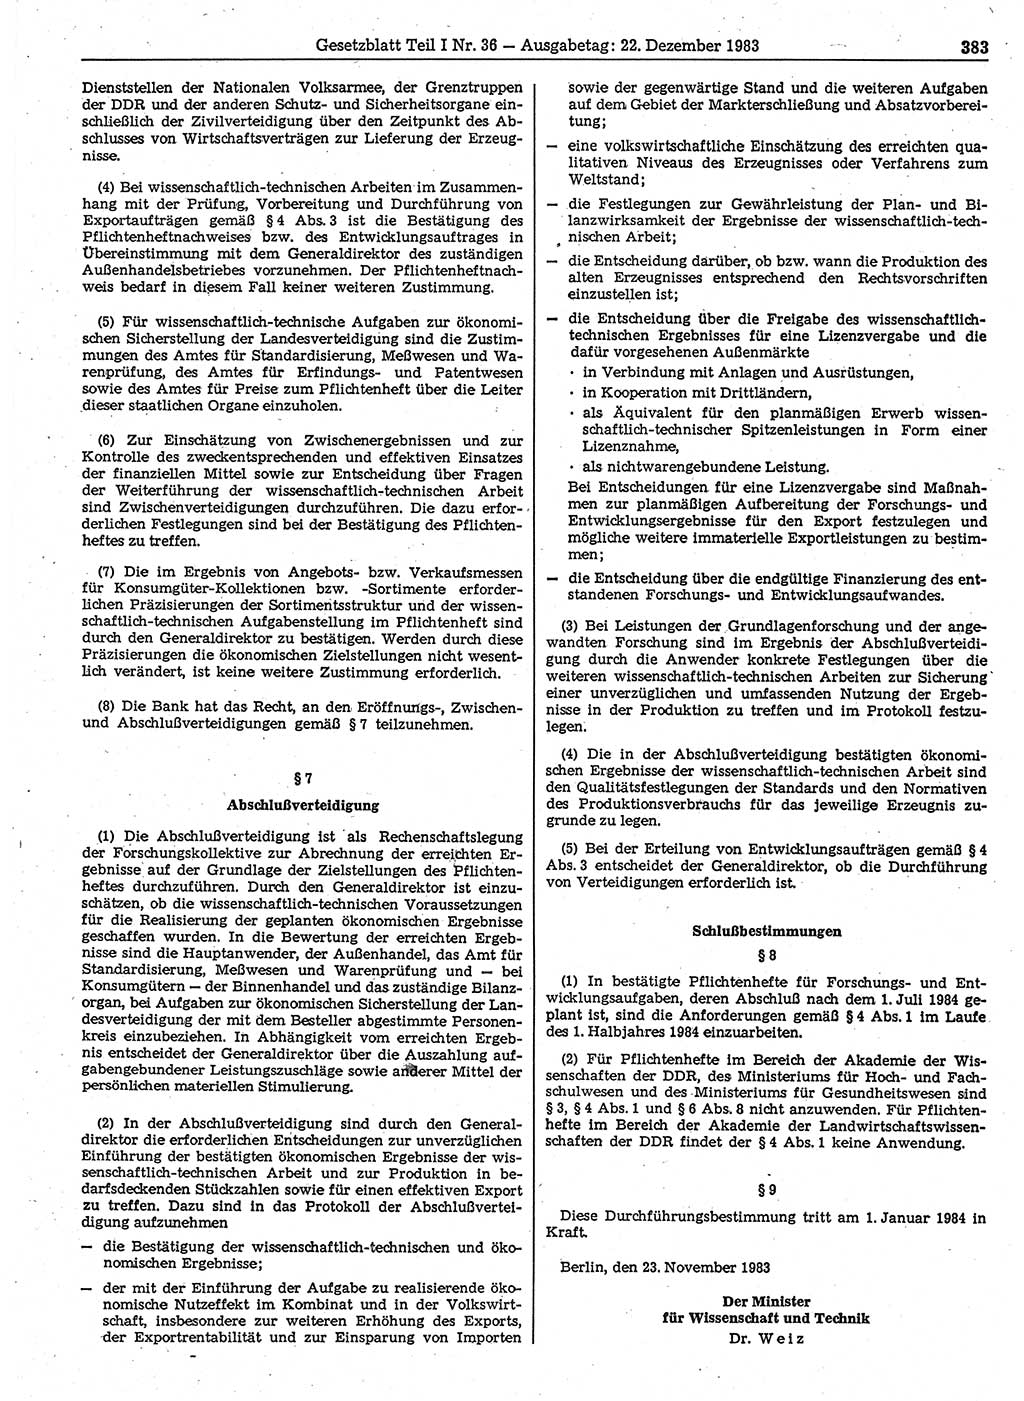 Gesetzblatt (GBl.) der Deutschen Demokratischen Republik (DDR) Teil Ⅰ 1983, Seite 383 (GBl. DDR Ⅰ 1983, S. 383)